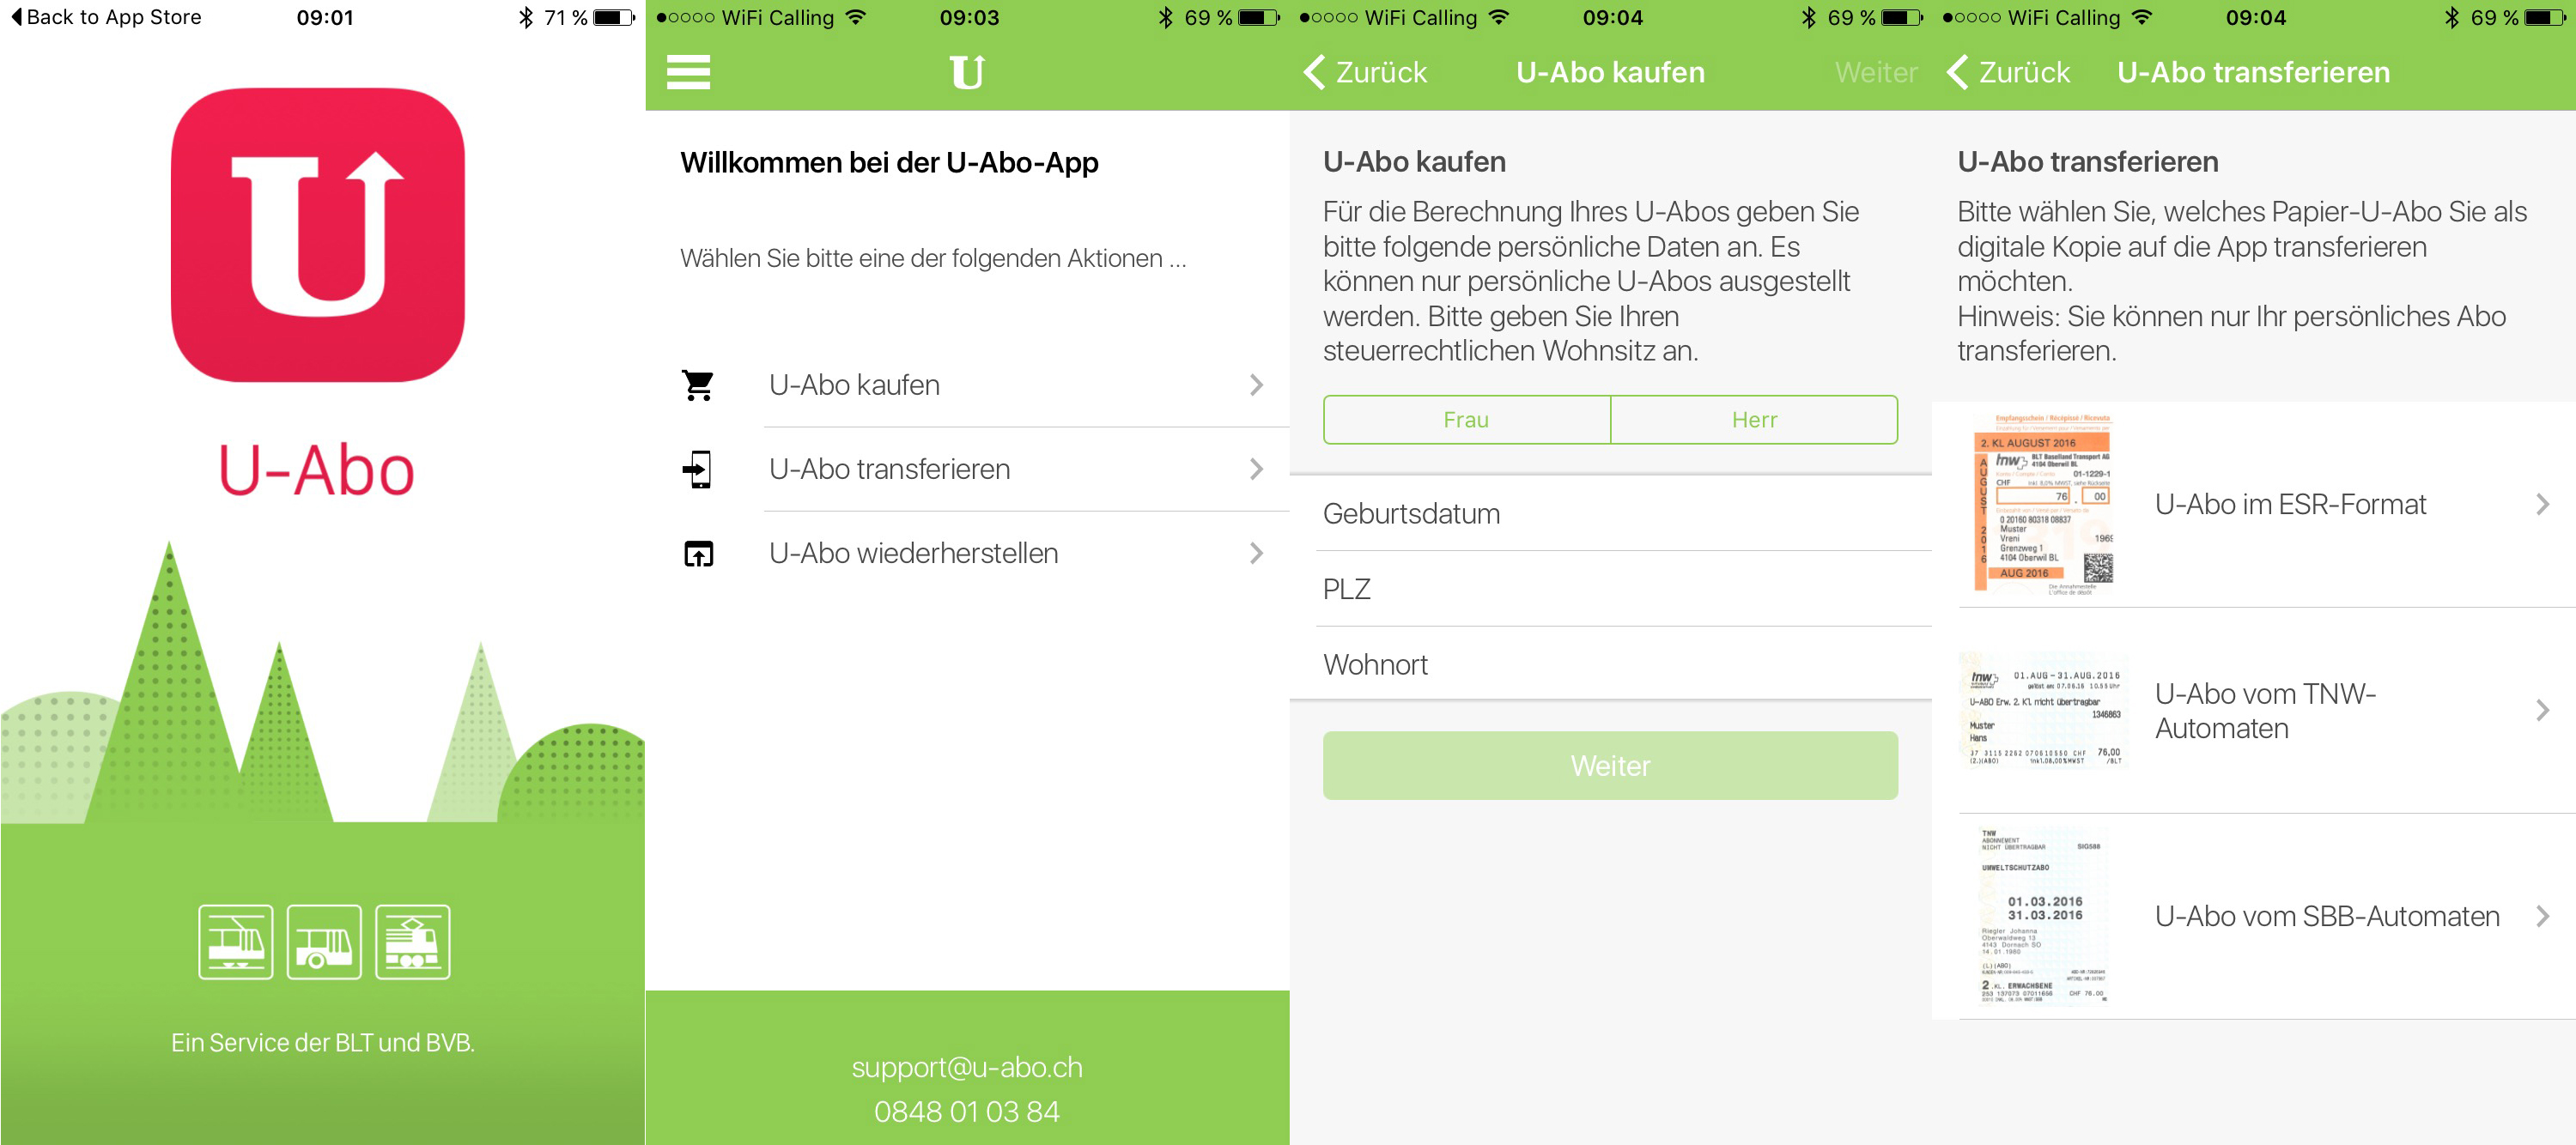 Vier Screenshots zeigen die Hauptfunktionen der U-Abo-App.